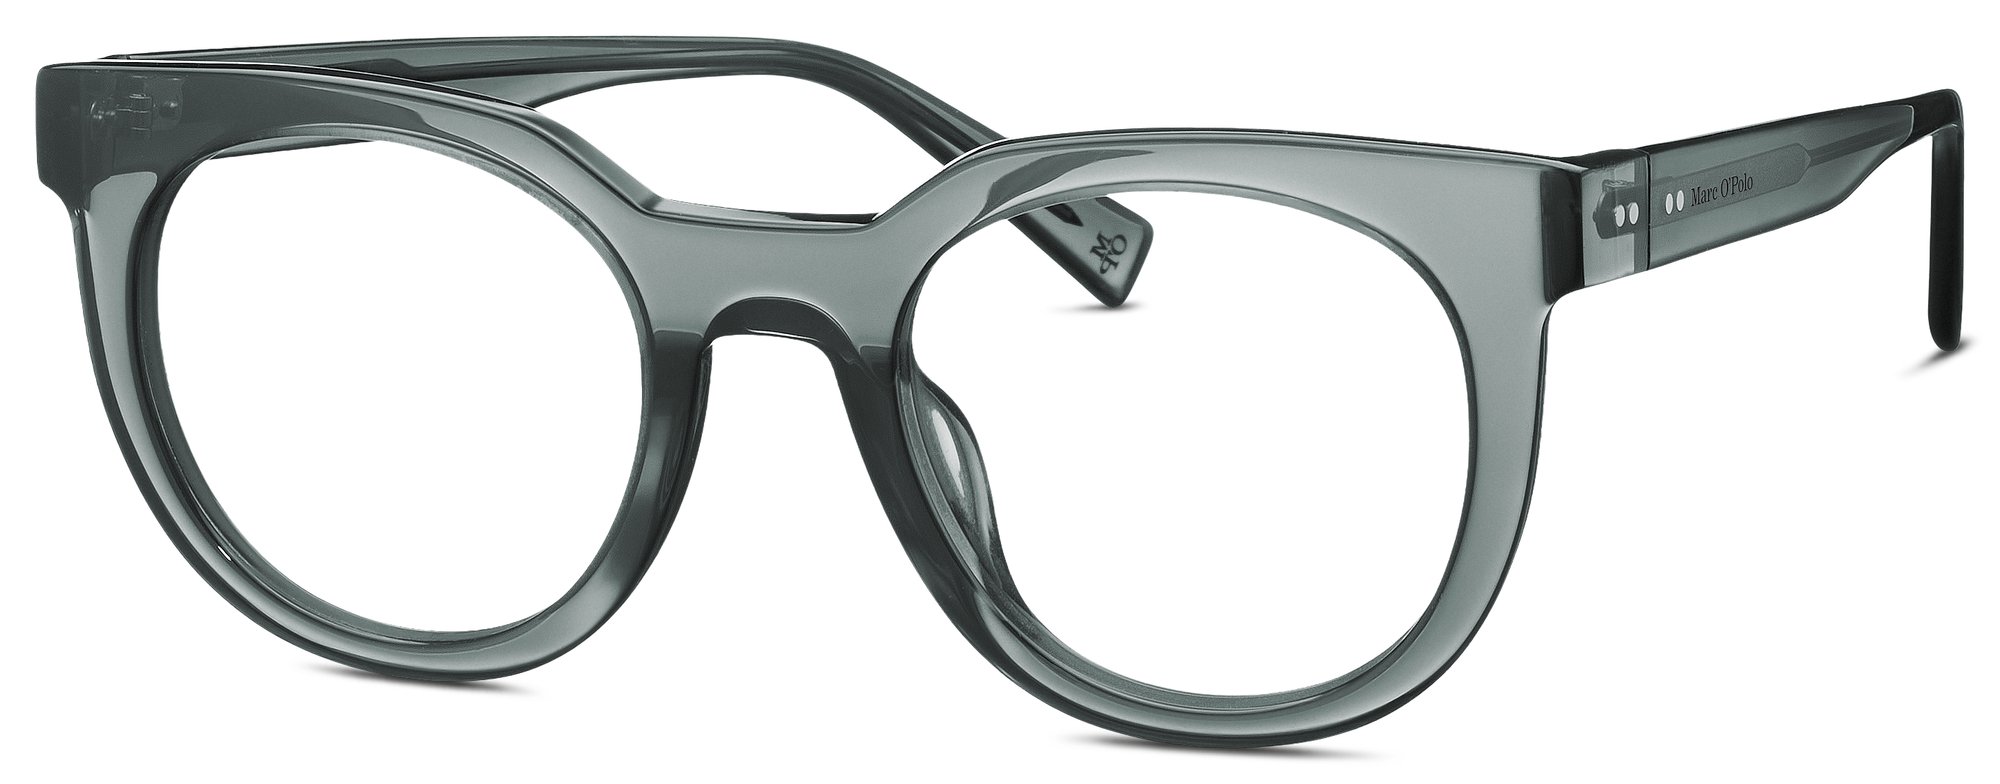 Das Bild zeigt die Korrektionsbrille 503195 30 von der Marke Marc O‘Polo in grau.